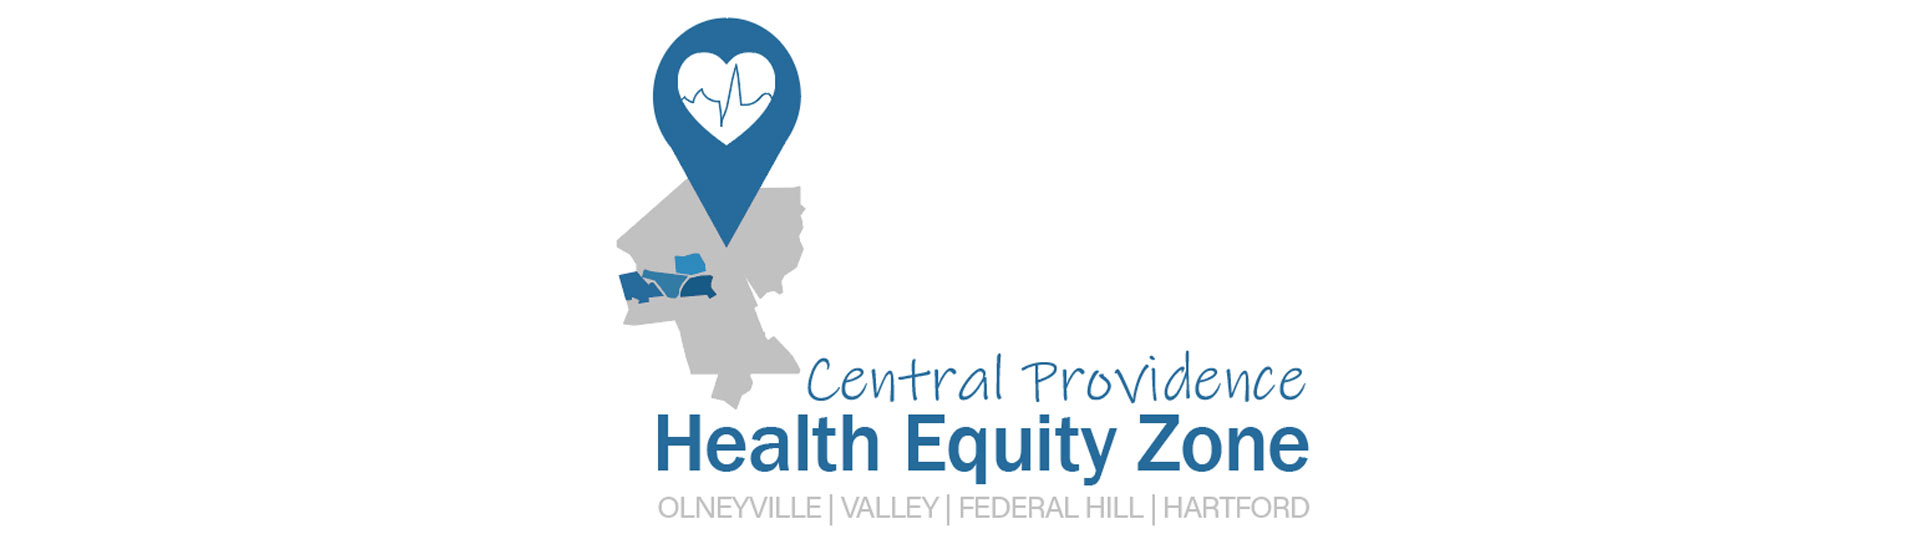 A Zona de Equidade em Saúde da Providência Central anuncia cerca de $400.000 em subvenções comunitárias